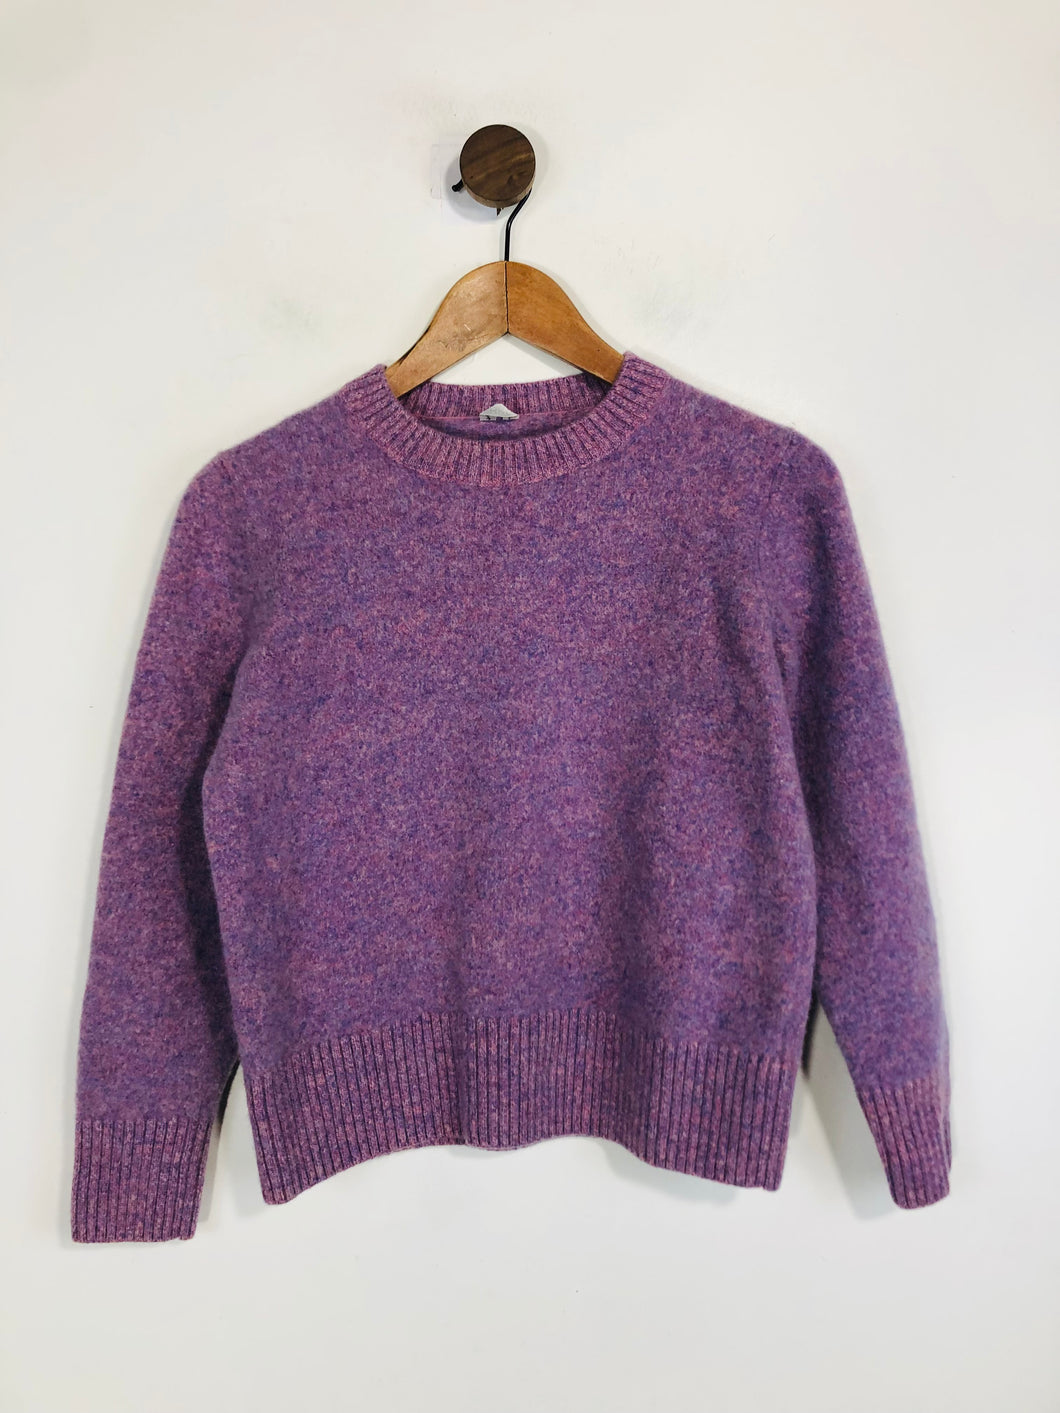 Arket Women's Wool Jumper | M UK10-12 | Purple